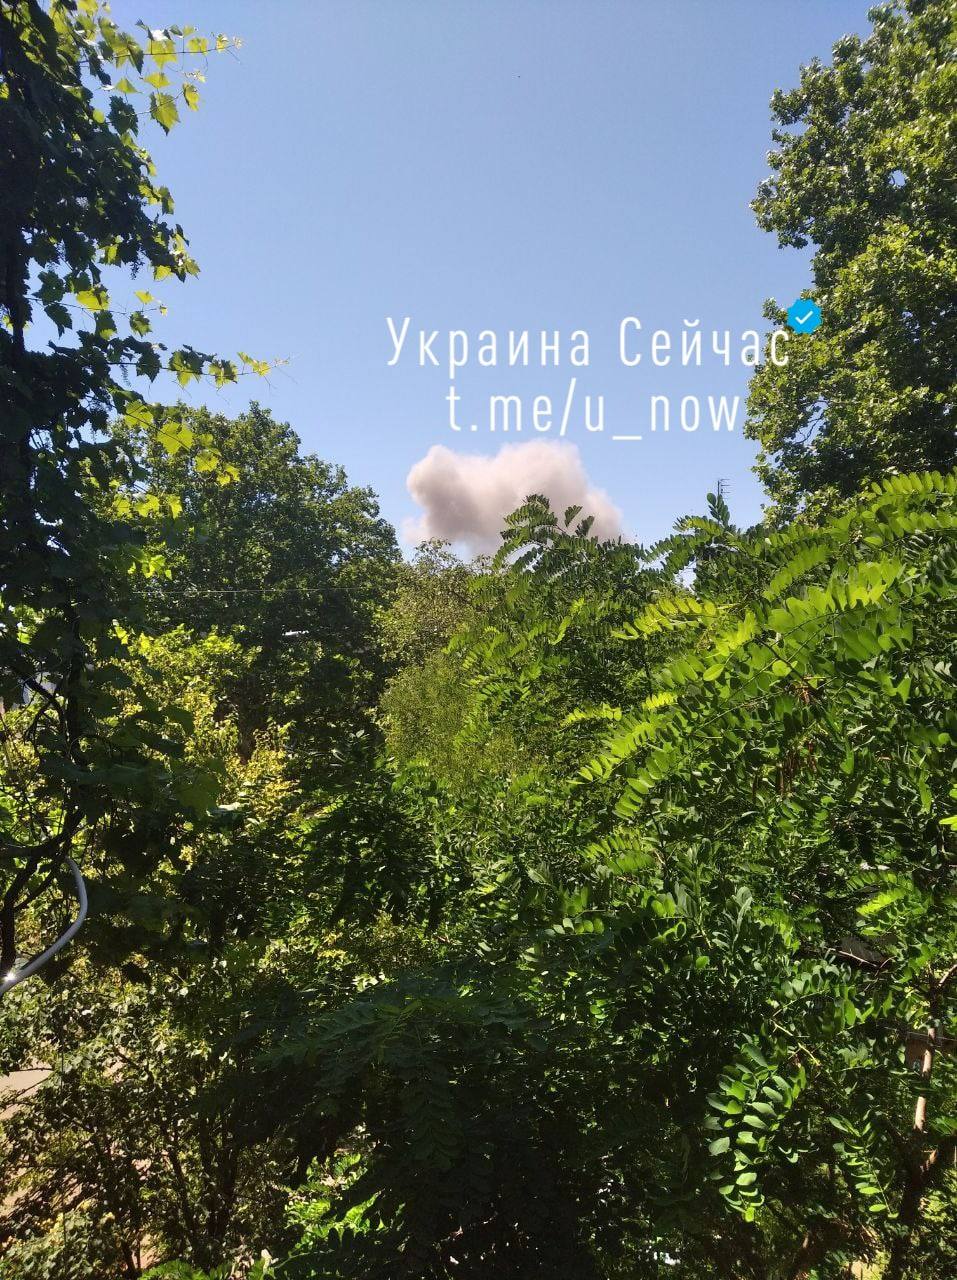 Пишут о сильном взрыве в Одессе 20 июня. Над городом поднимается дым